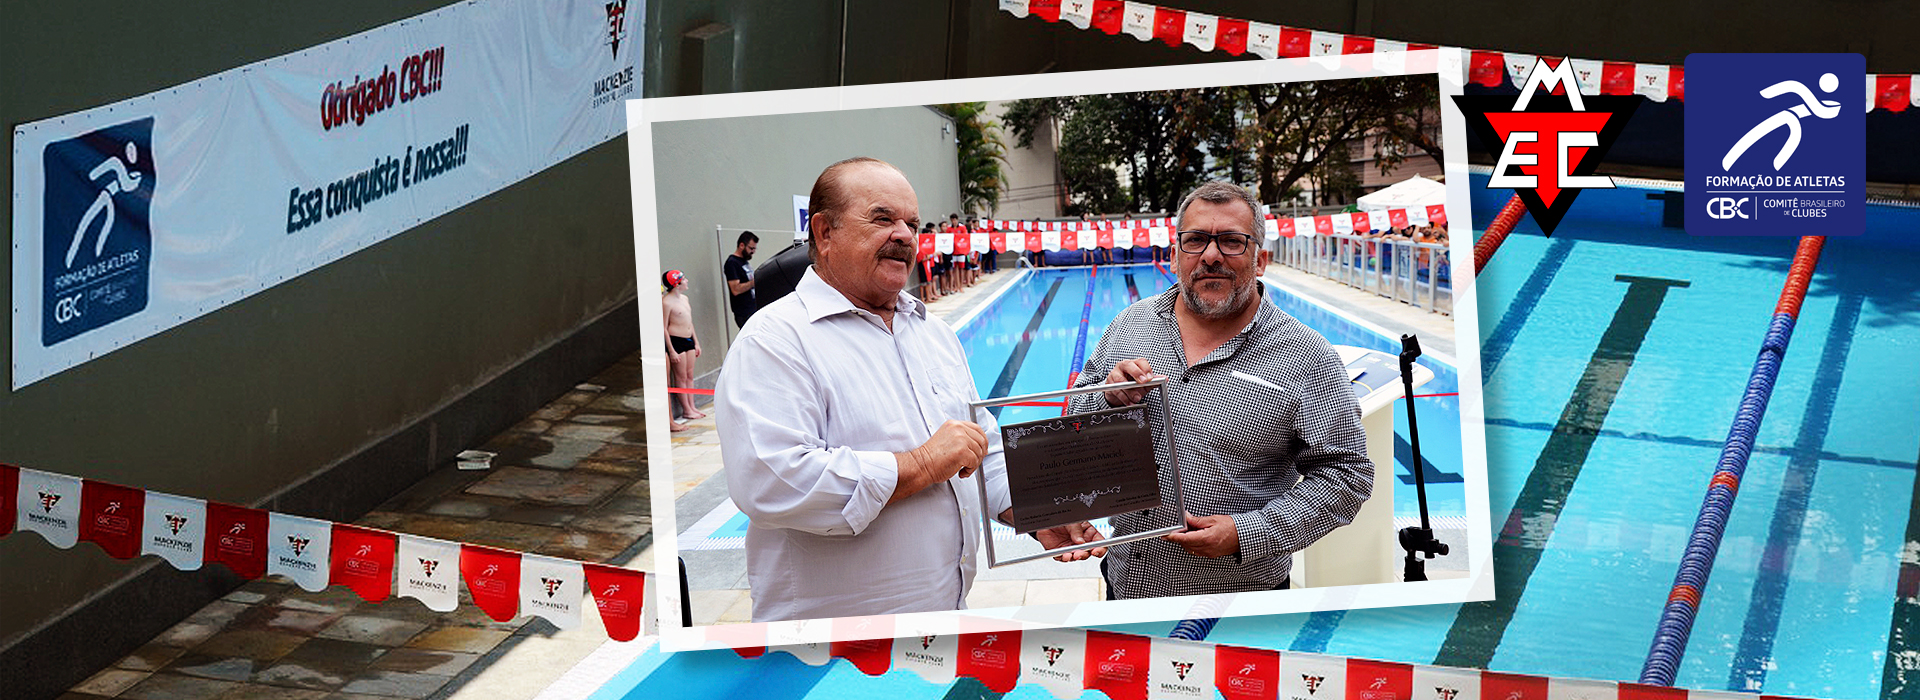 Mackenzie Esporte Clube-MG inaugura nova piscina adquirida com recursos do Edital nº 09 do CBC